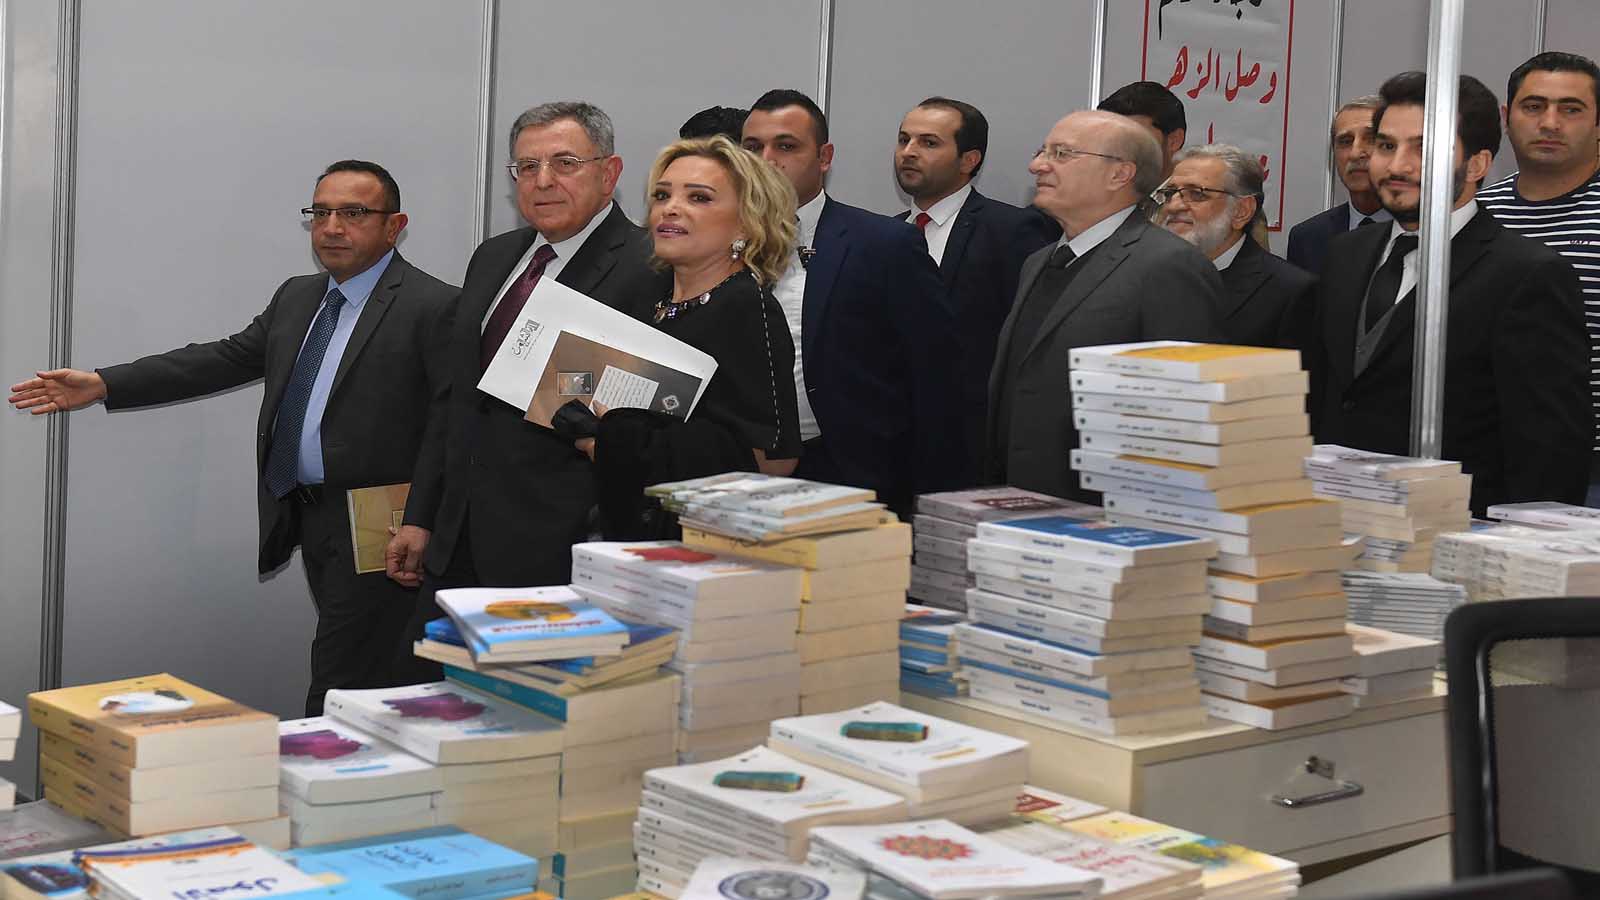 ختام معرض بيروت للكتاب: لصوص المرآب و"نظرية الفستق"